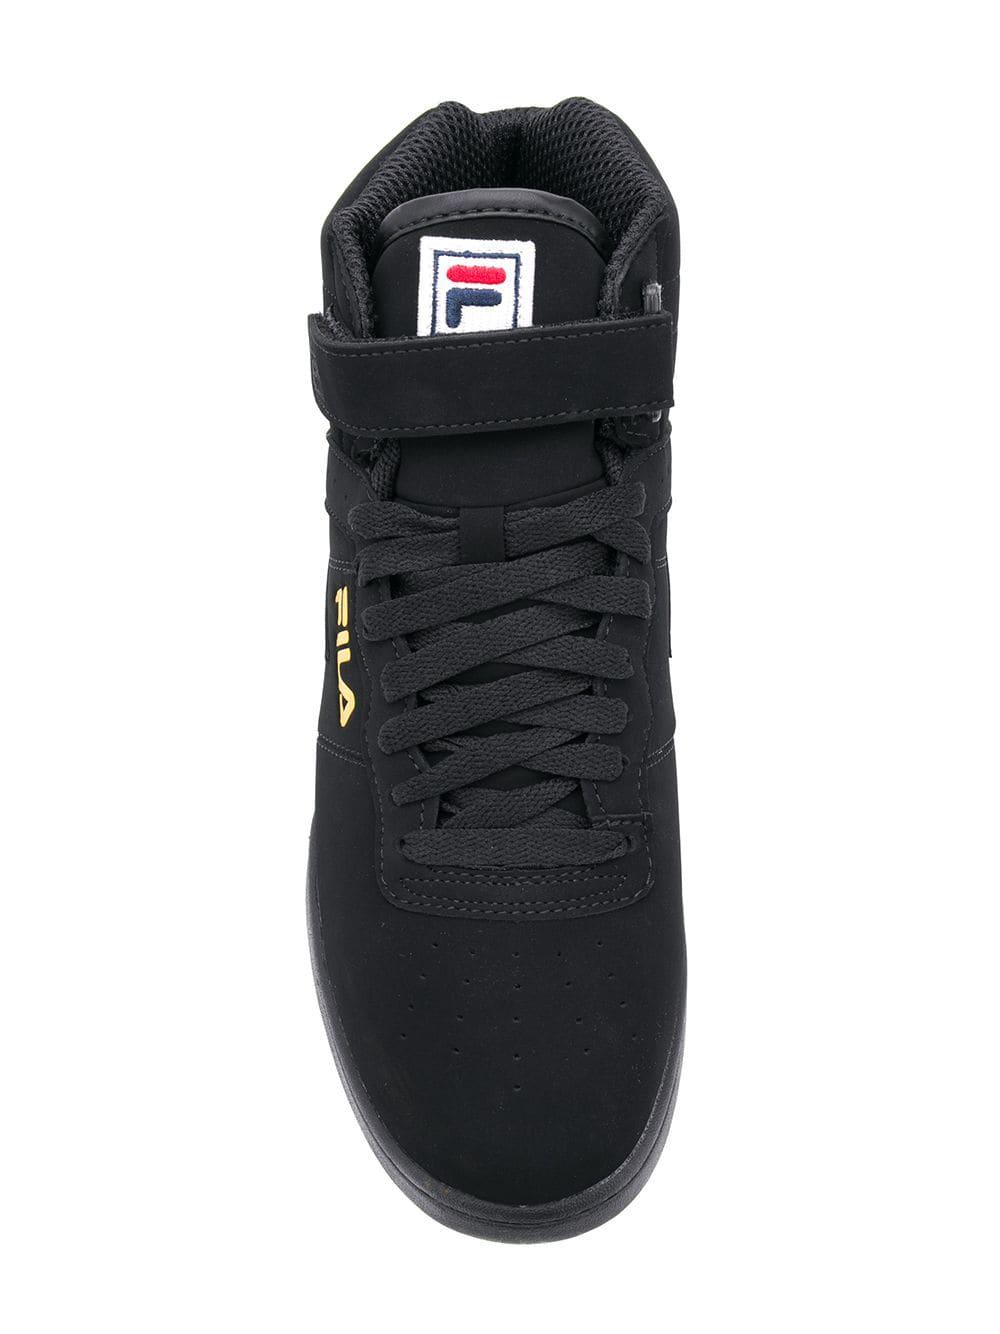 Fila Rubber F-13 Lineker Sneakers in Black for Men - Lyst